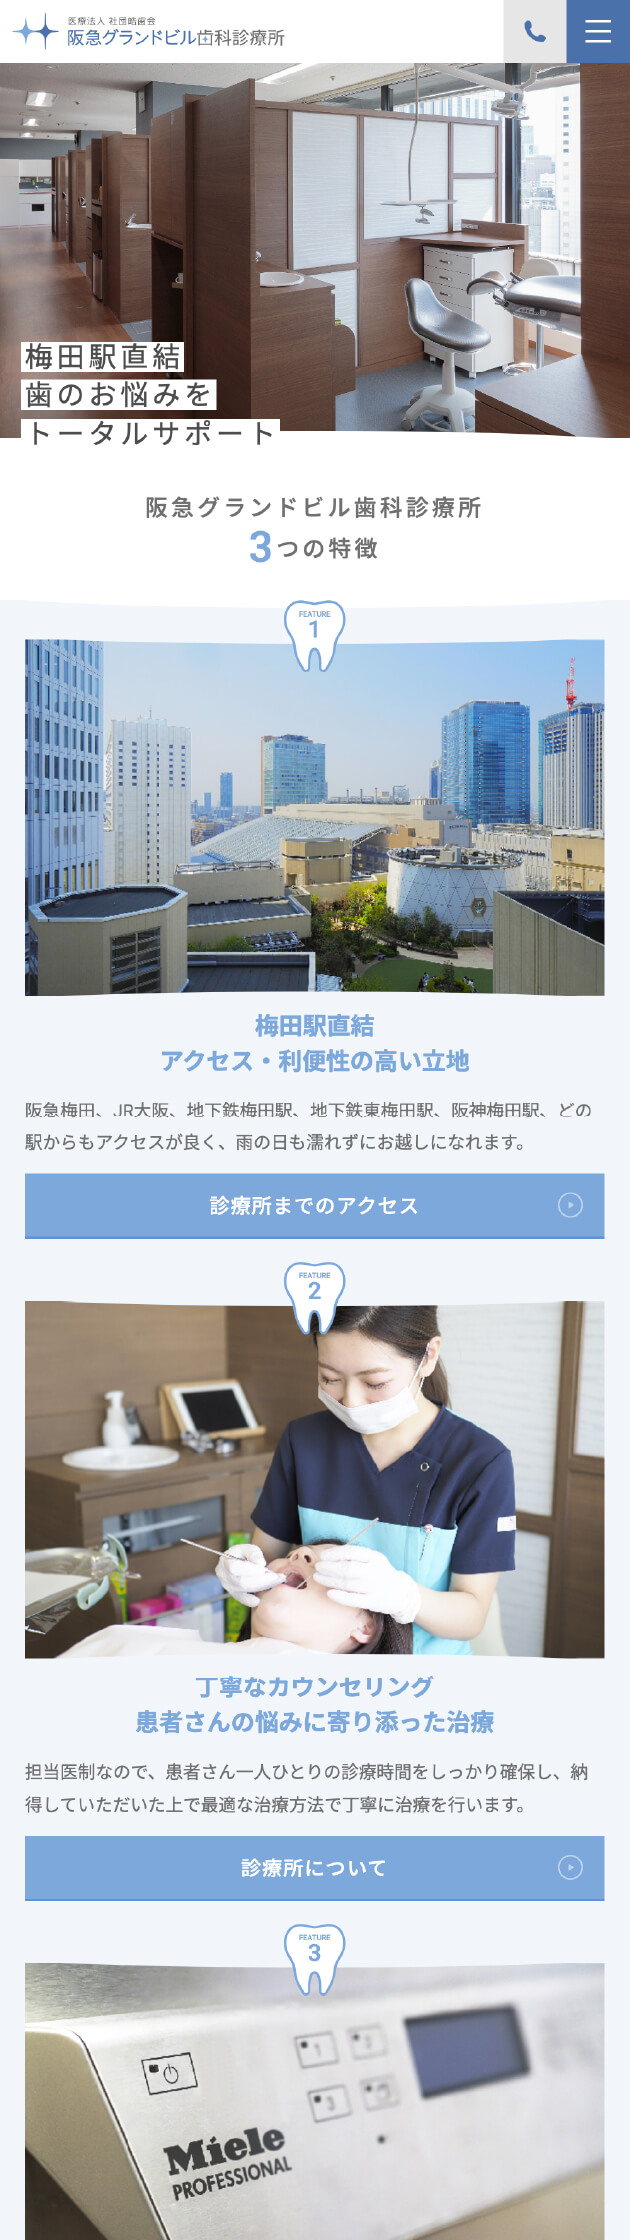 阪急グランドビル歯科診療所 公式サイト